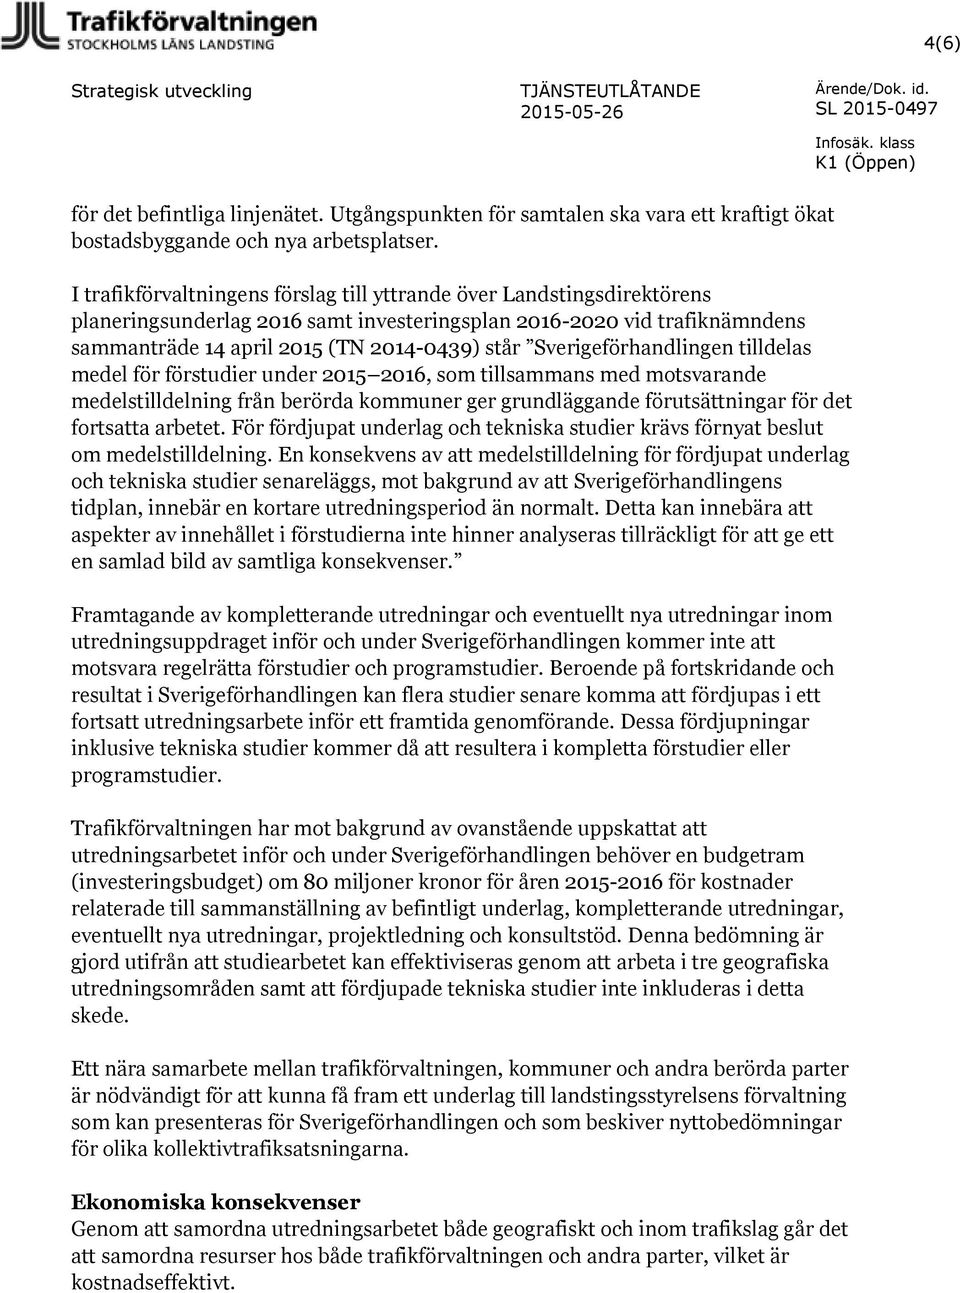 Sverigeförhandlingen tilldelas medel för förstudier under 2015 2016, som tillsammans med motsvarande medelstilldelning från berörda kommuner ger grundläggande förutsättningar för det fortsatta